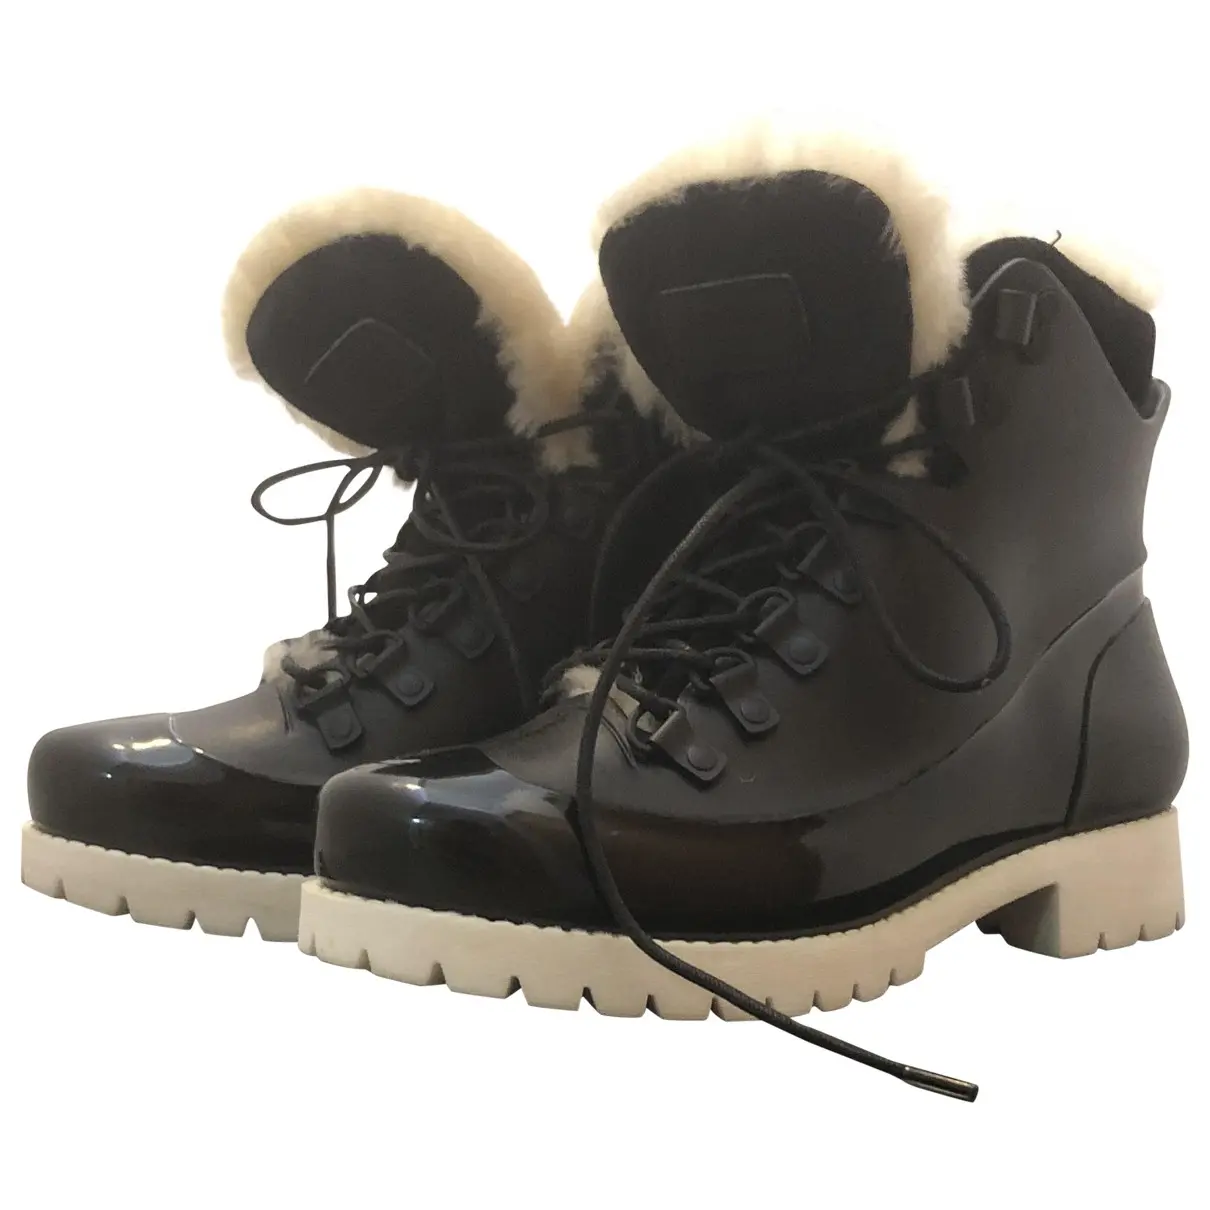 Snow boots Australia Luxe